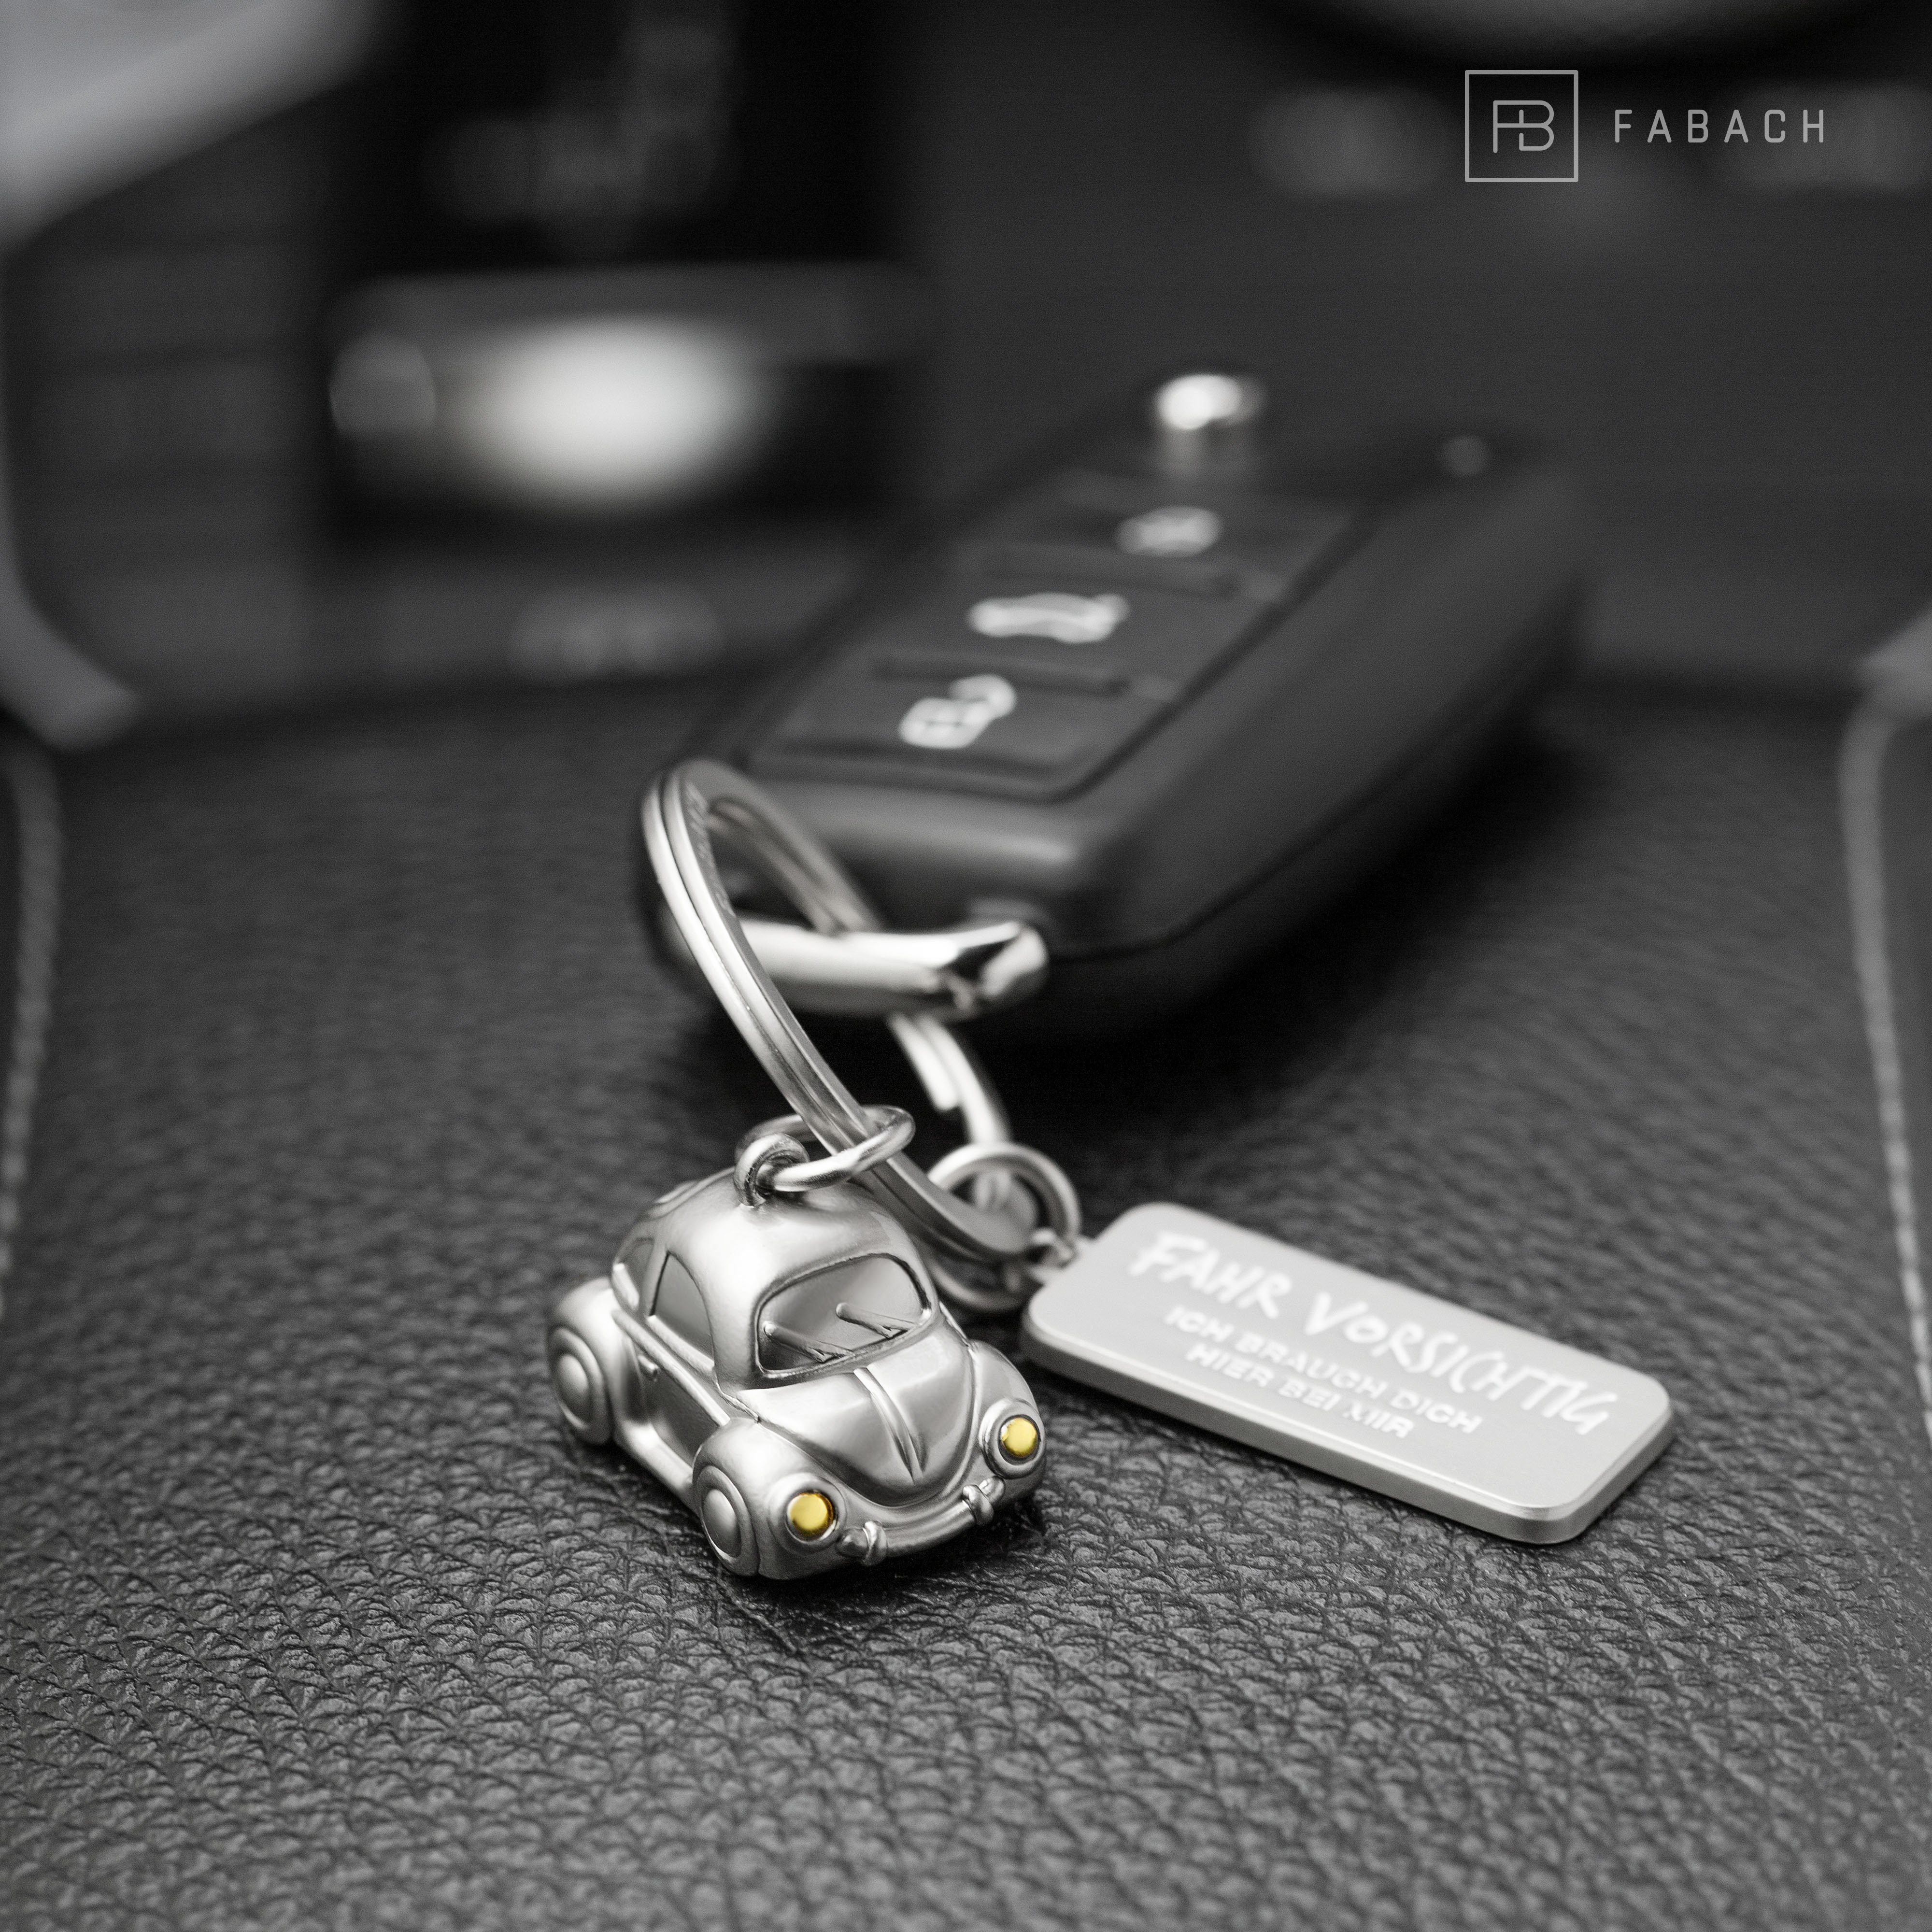 FABACH Schlüsselanhänger Miniatur Auto "Car" Gravur Glücksbringer - Roségold "Fahr vorsichtig" mit